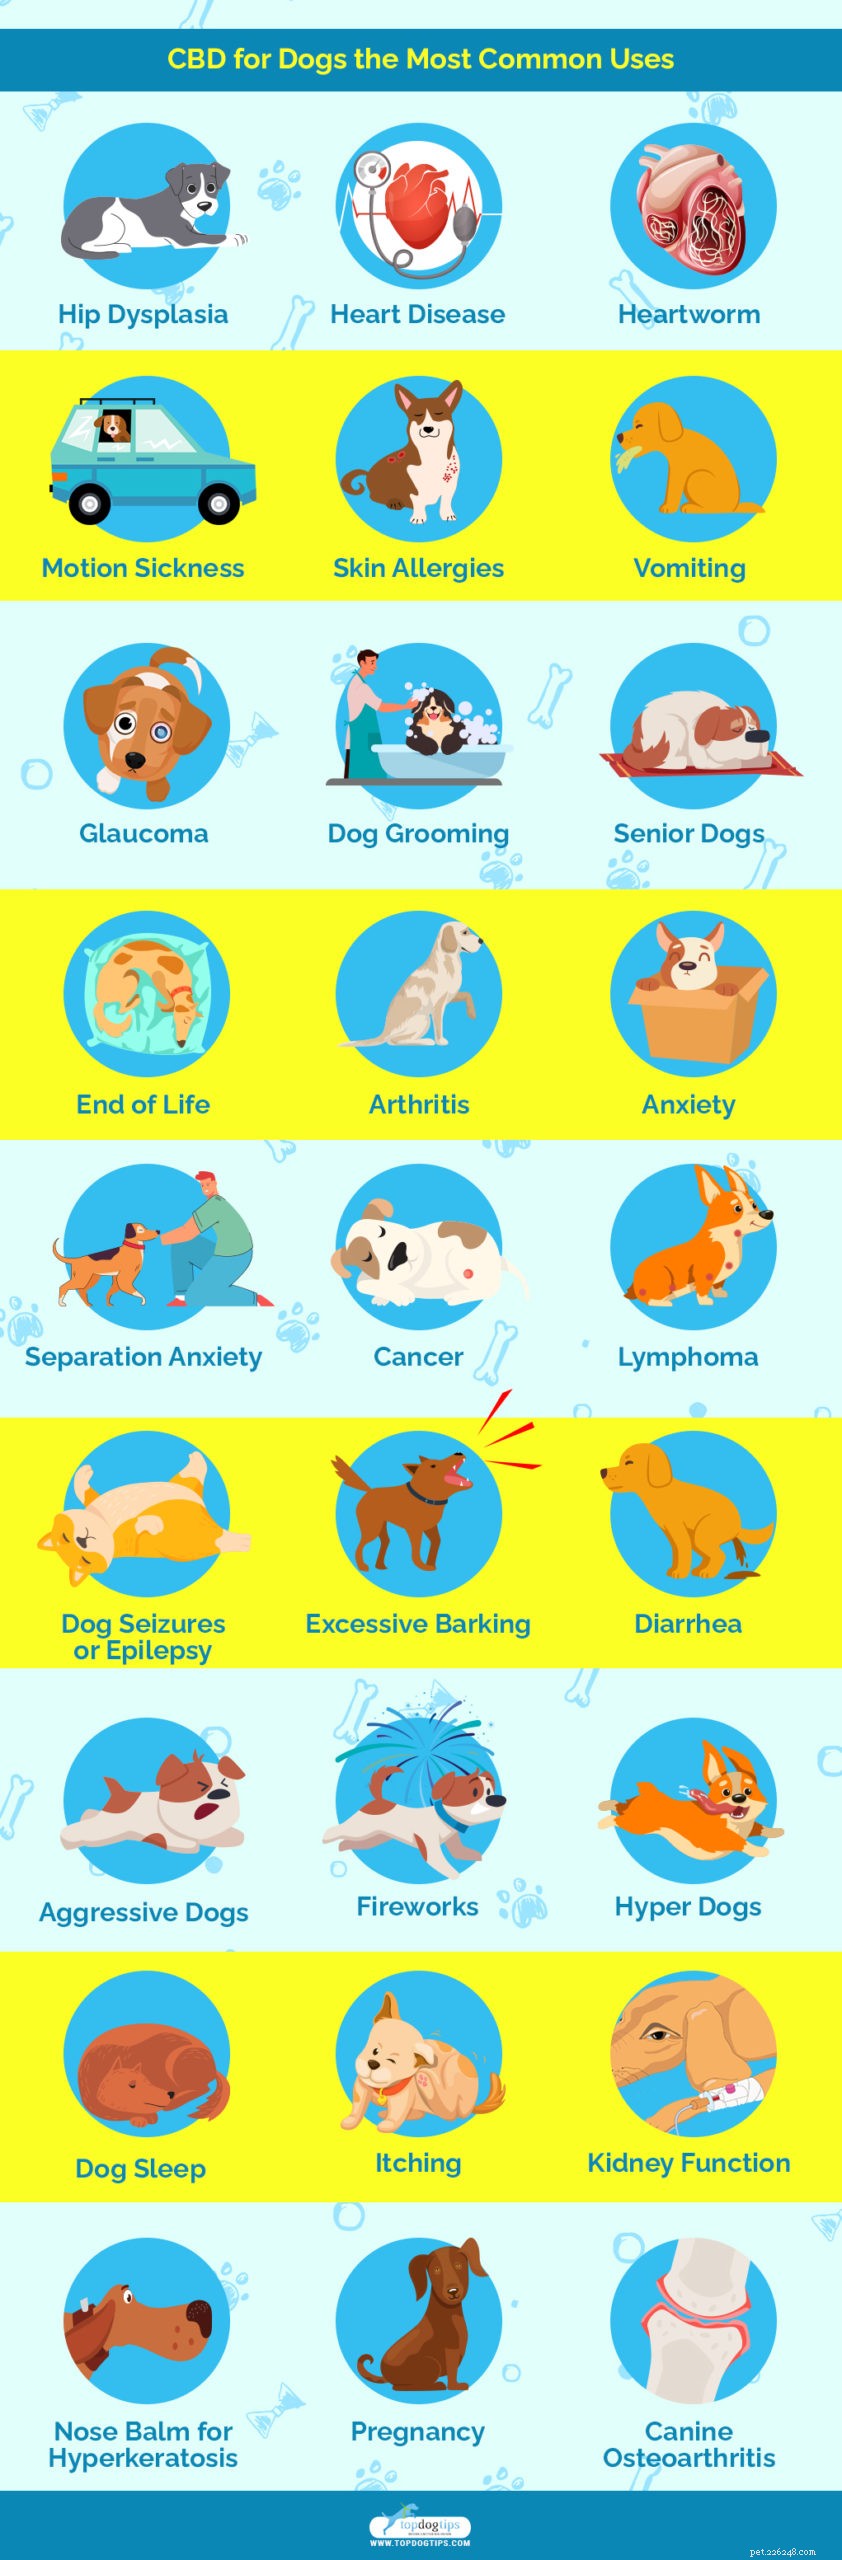 개를 위한 CBD의 25가지 건강상의 이점 및 용도